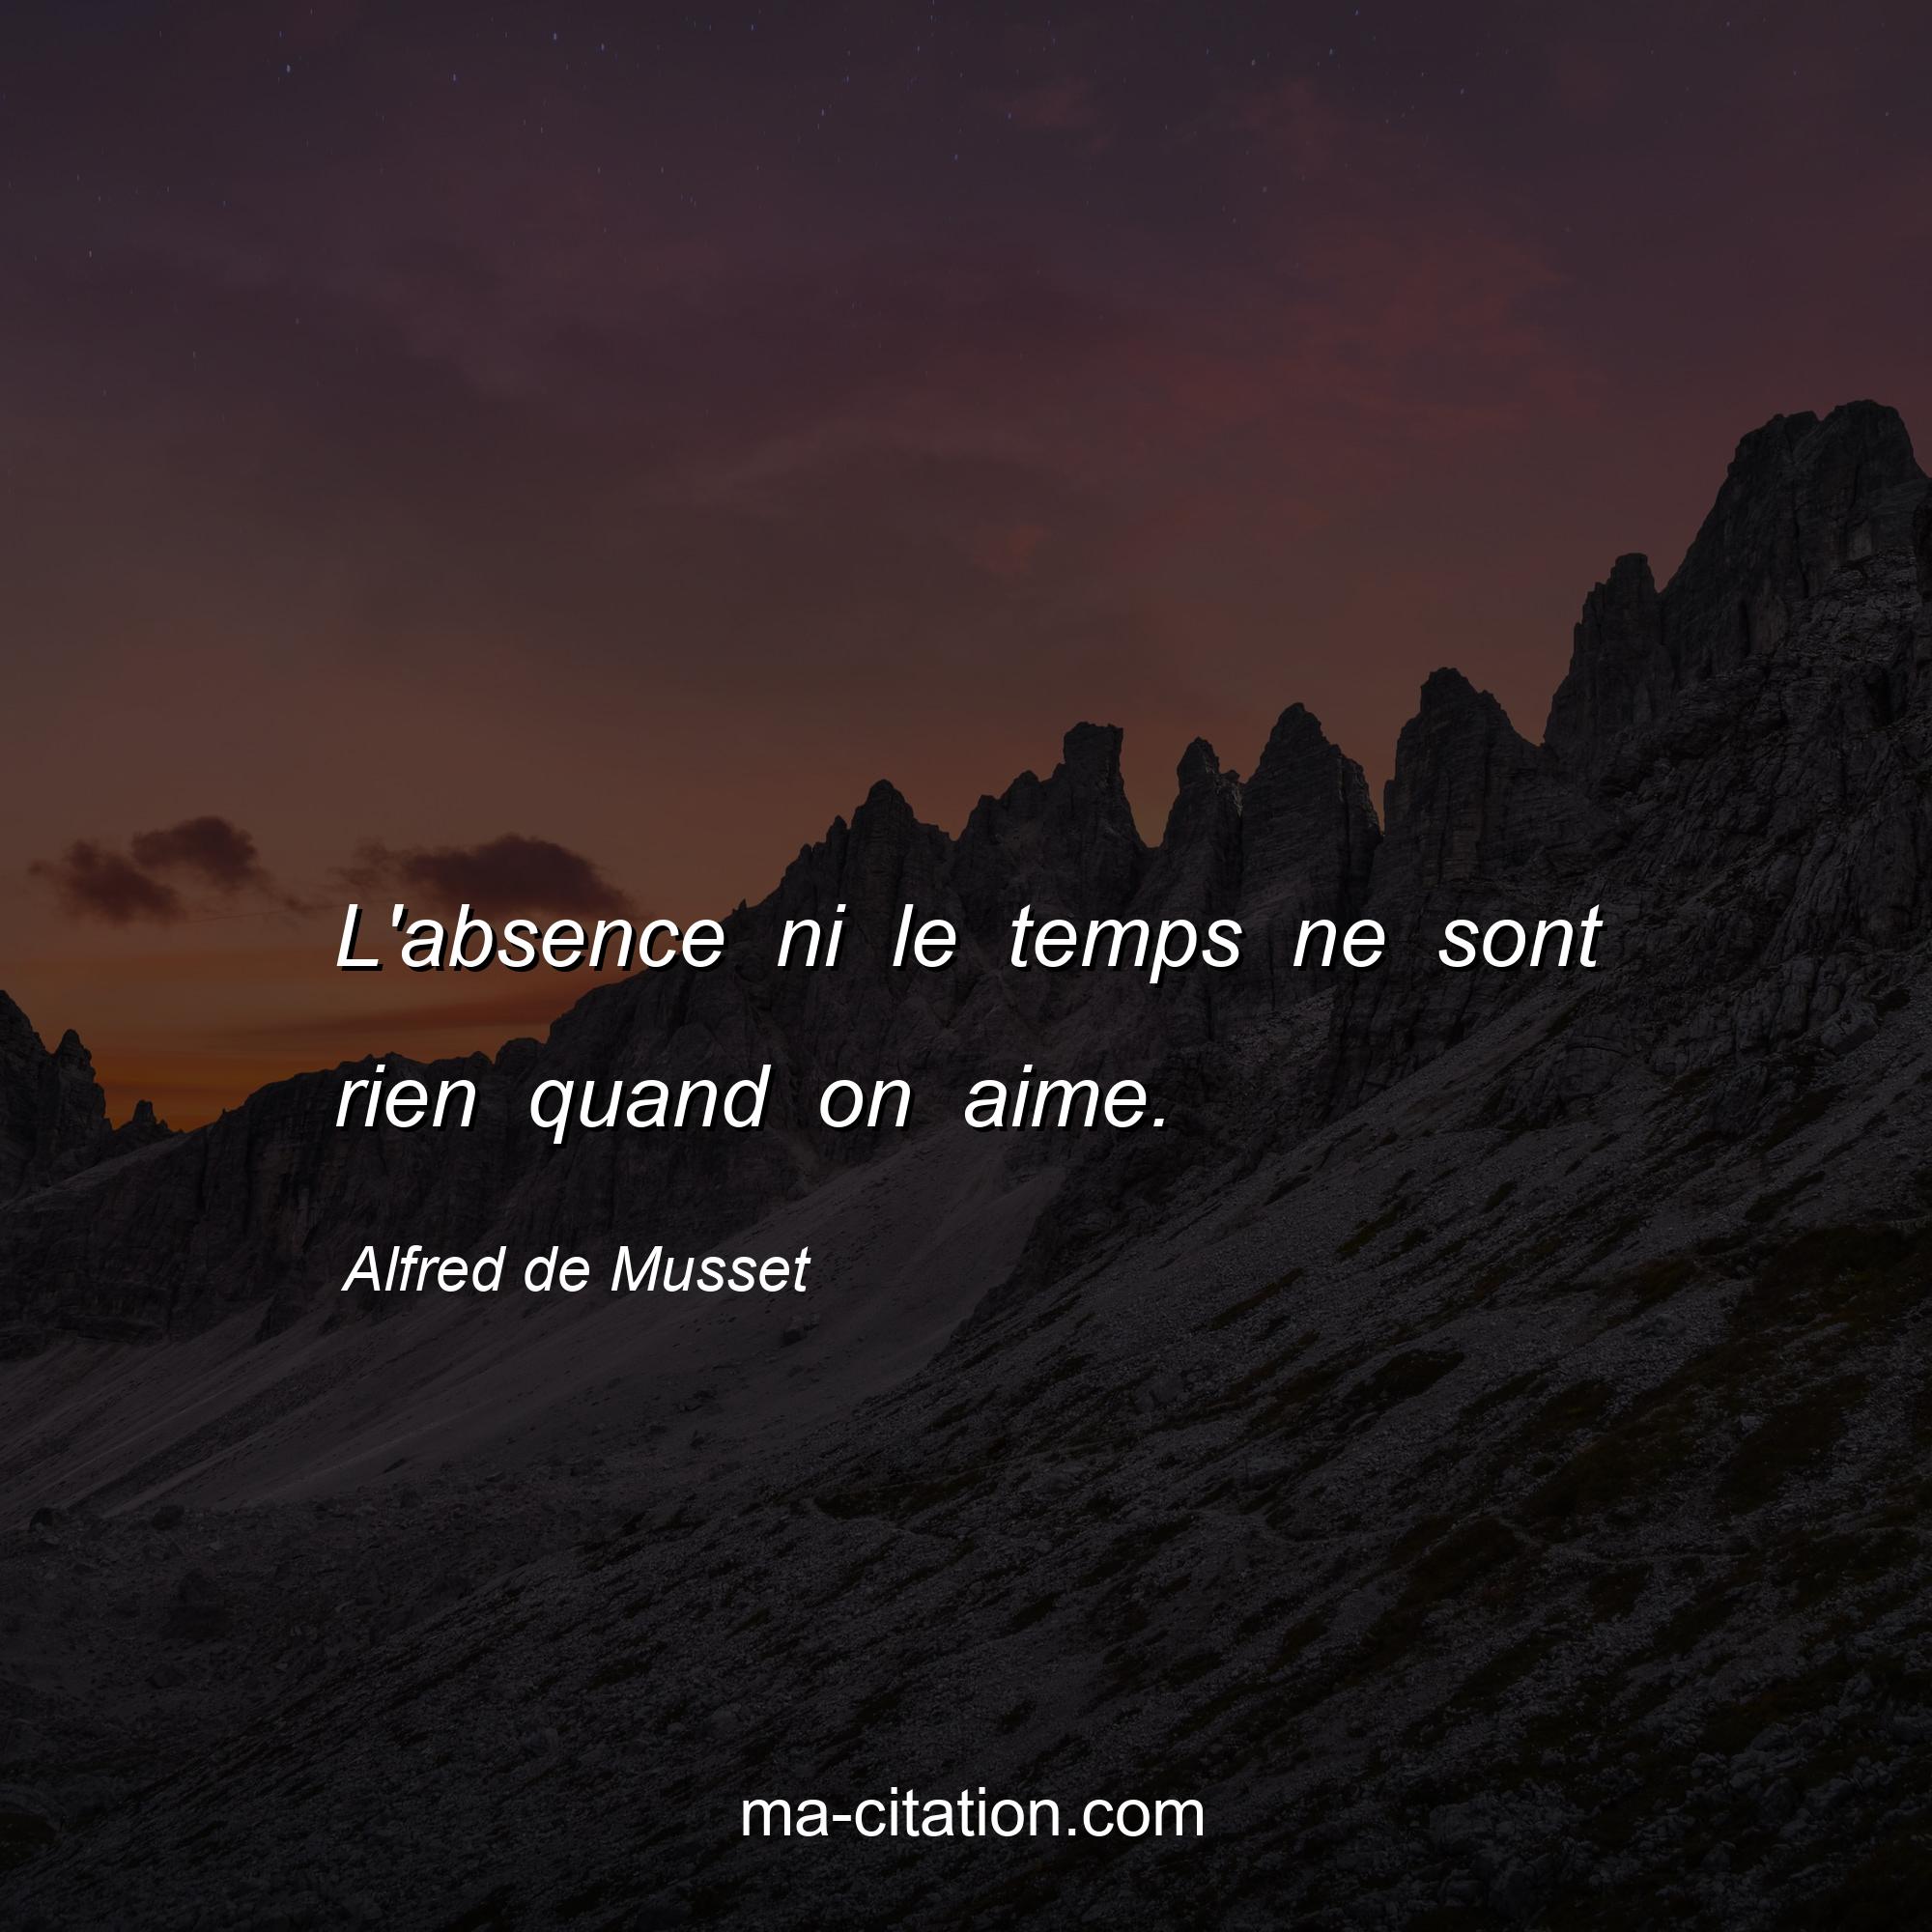 Alfred de Musset : L'absence ni le temps ne sont rien quand on aime.